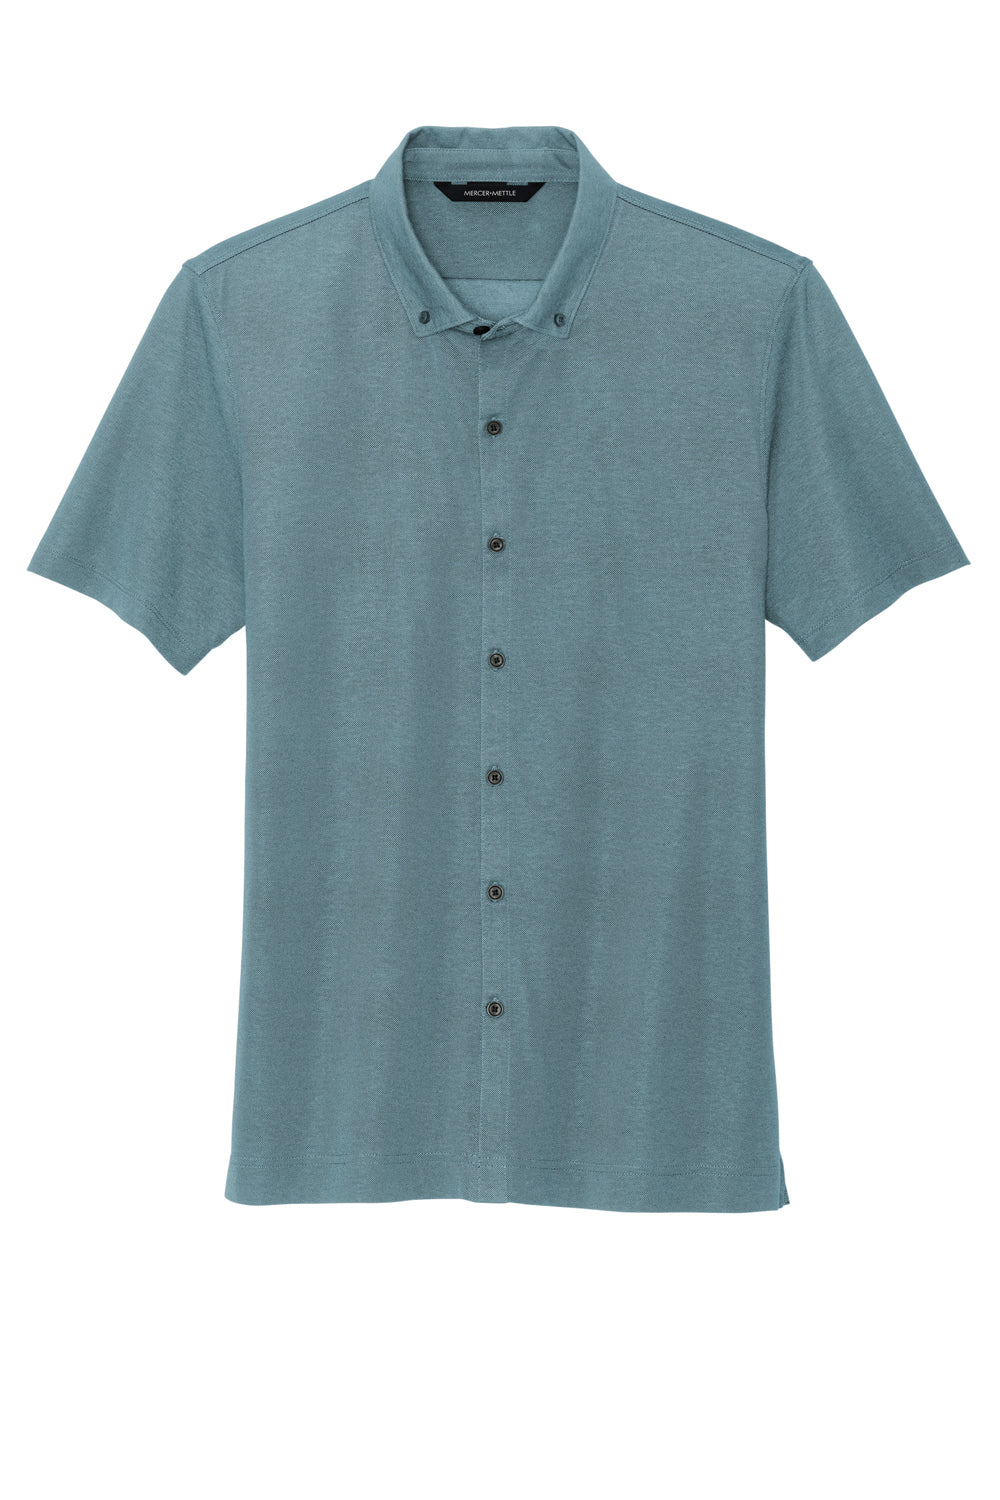 Mercer+Mettle Mens Moisture Wicking Short Sleeve Button Down Shirt Heather Parisian Blue Flat Front